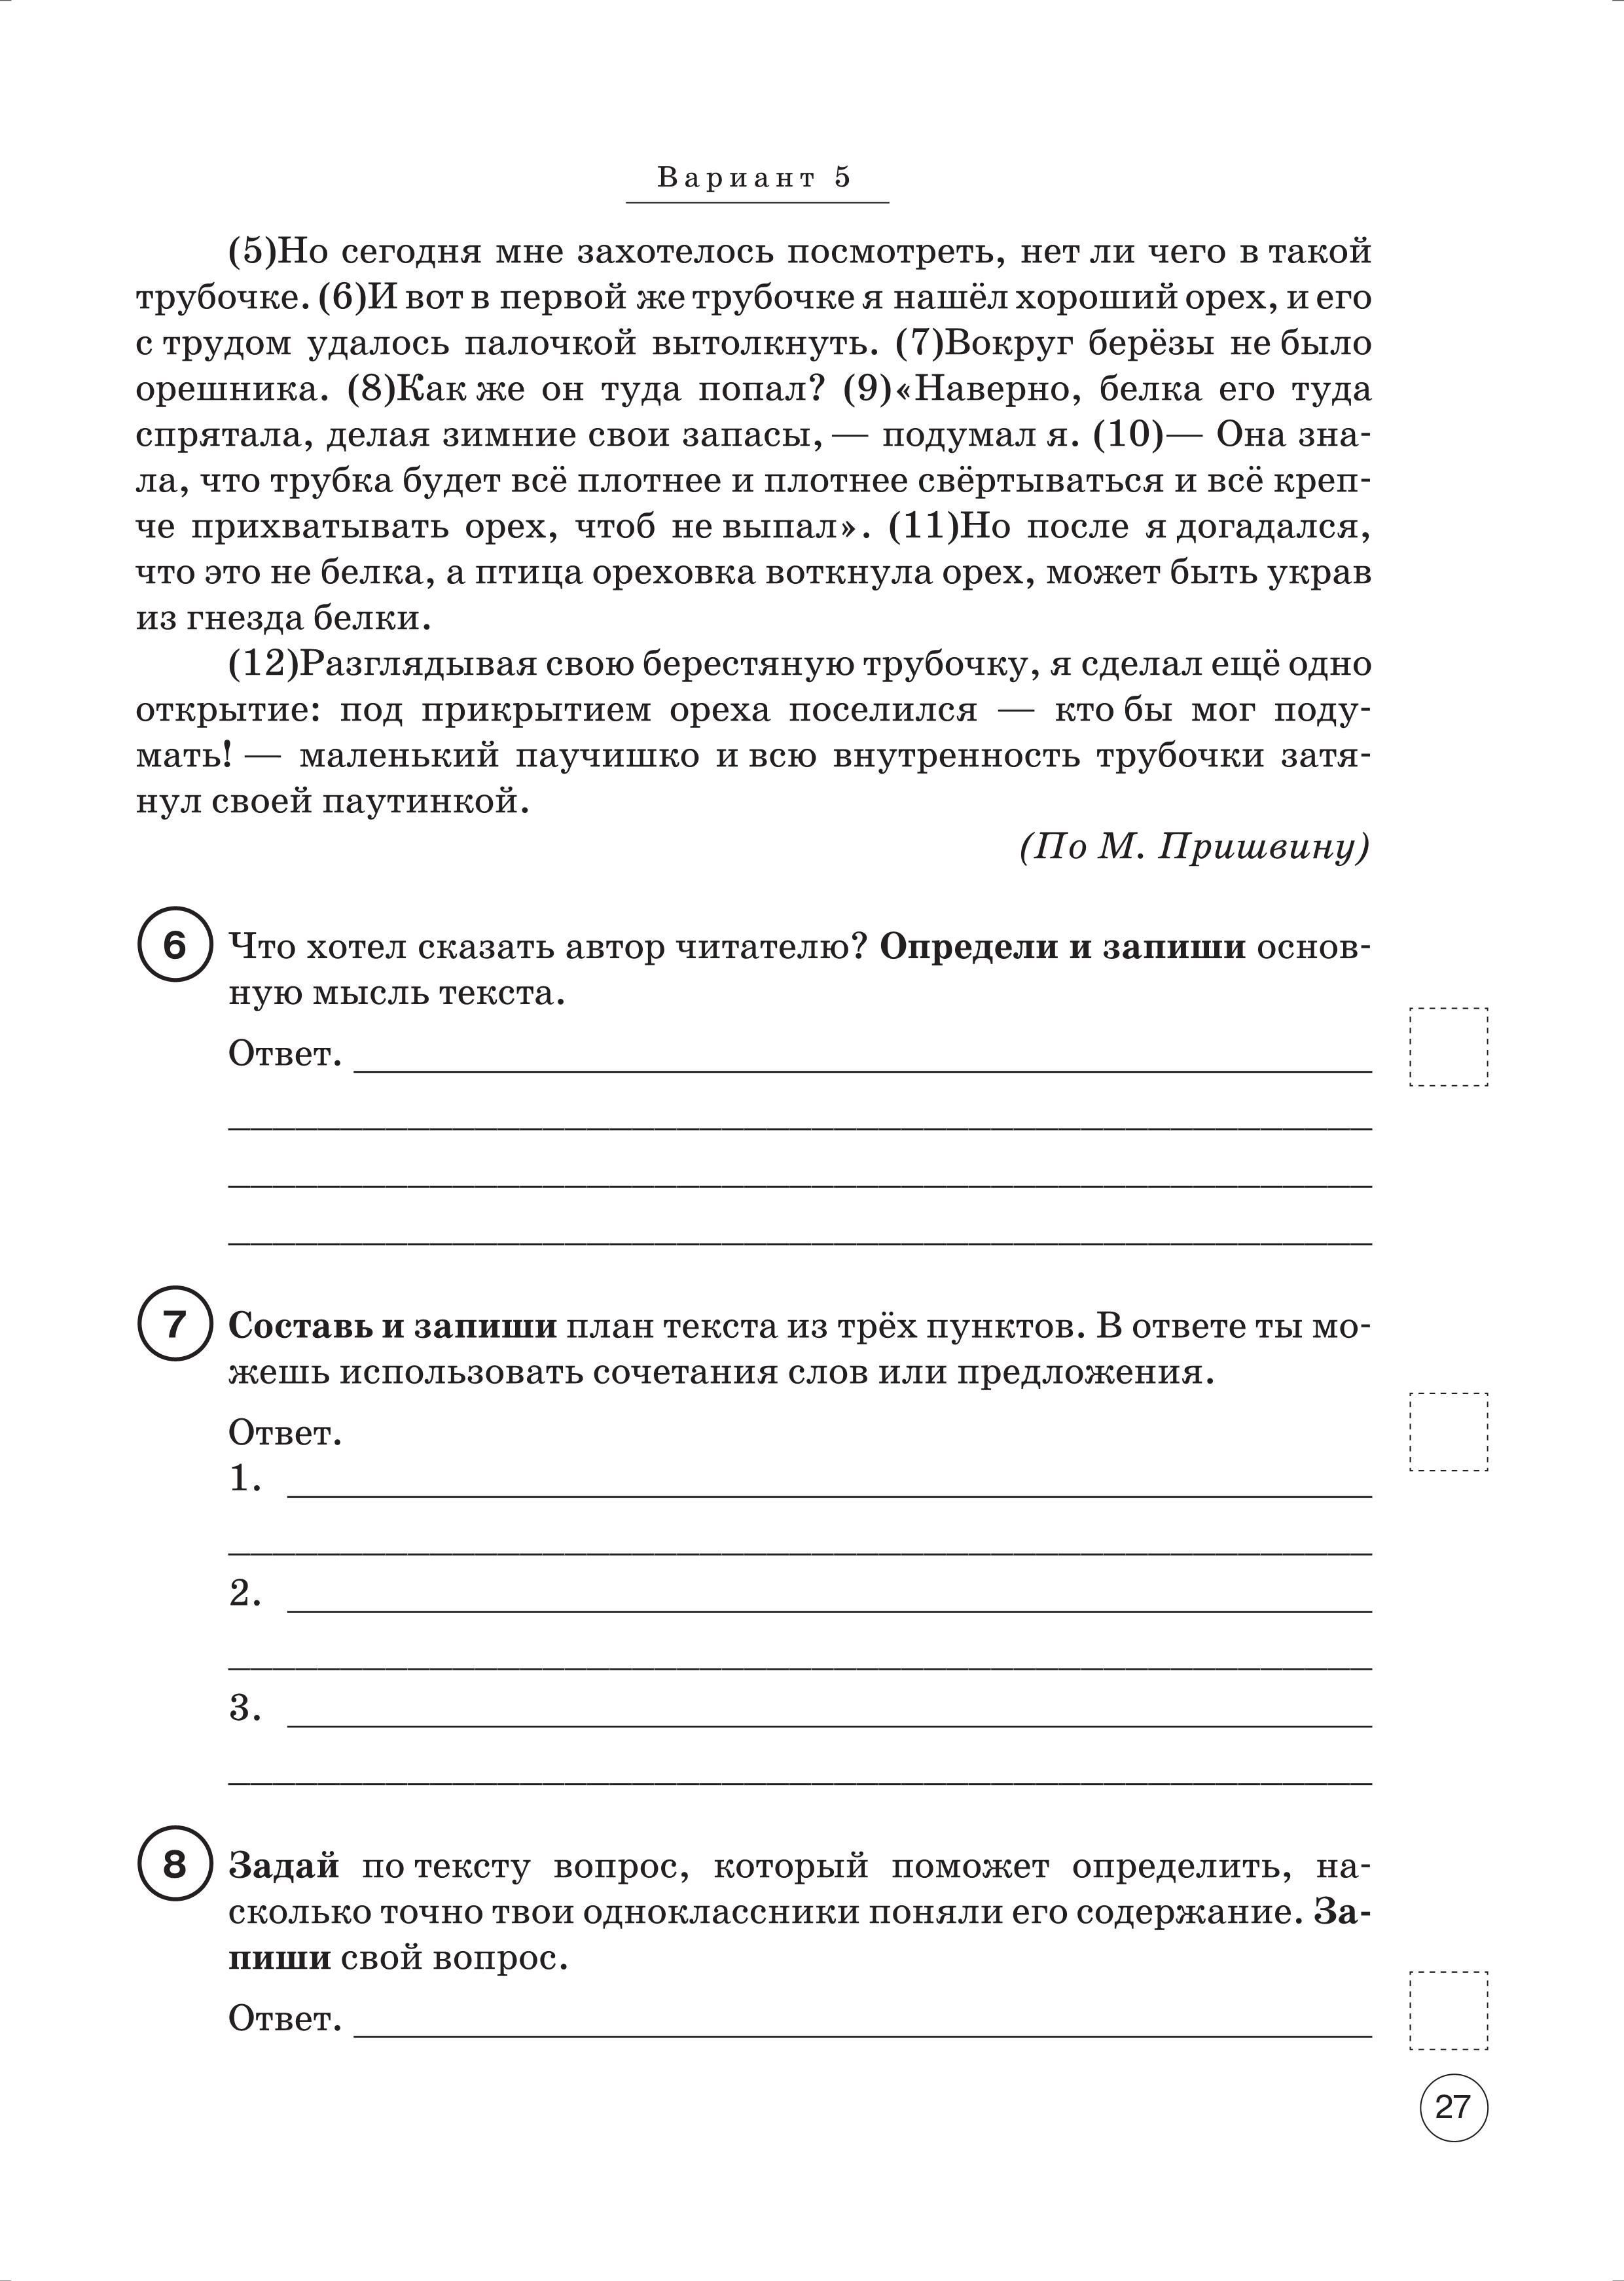 Русский язык. ВПР. 4-й класс. 10 тренировочных вариантов